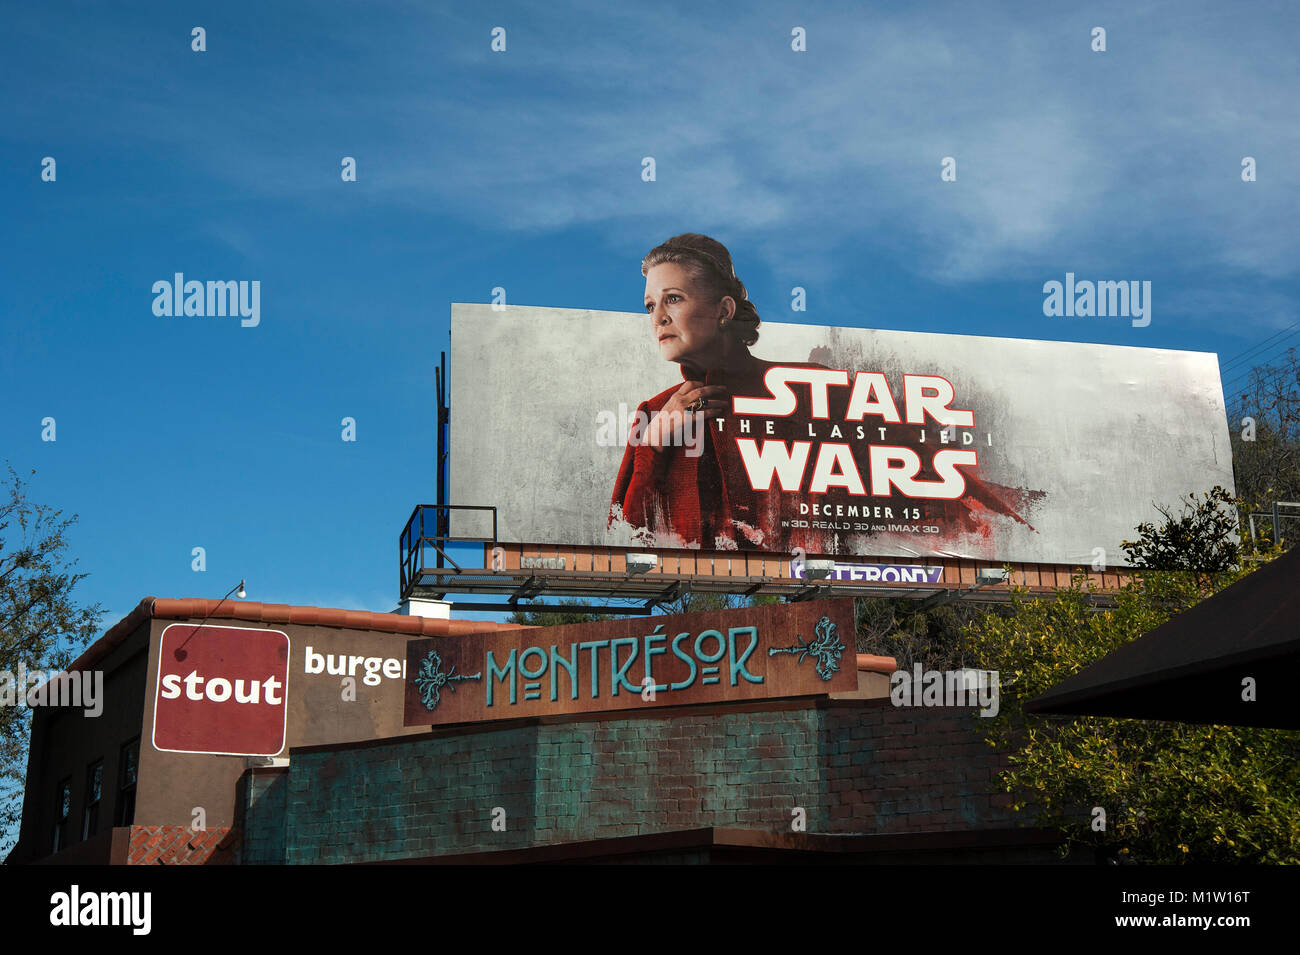 Reklametafeln mit Carrie Fisher Förderung Star Wars der Letzte jedi Film auf Ventura Blvd. in Studio City Nachbarschaft w Los Angeles, CA Stockfoto